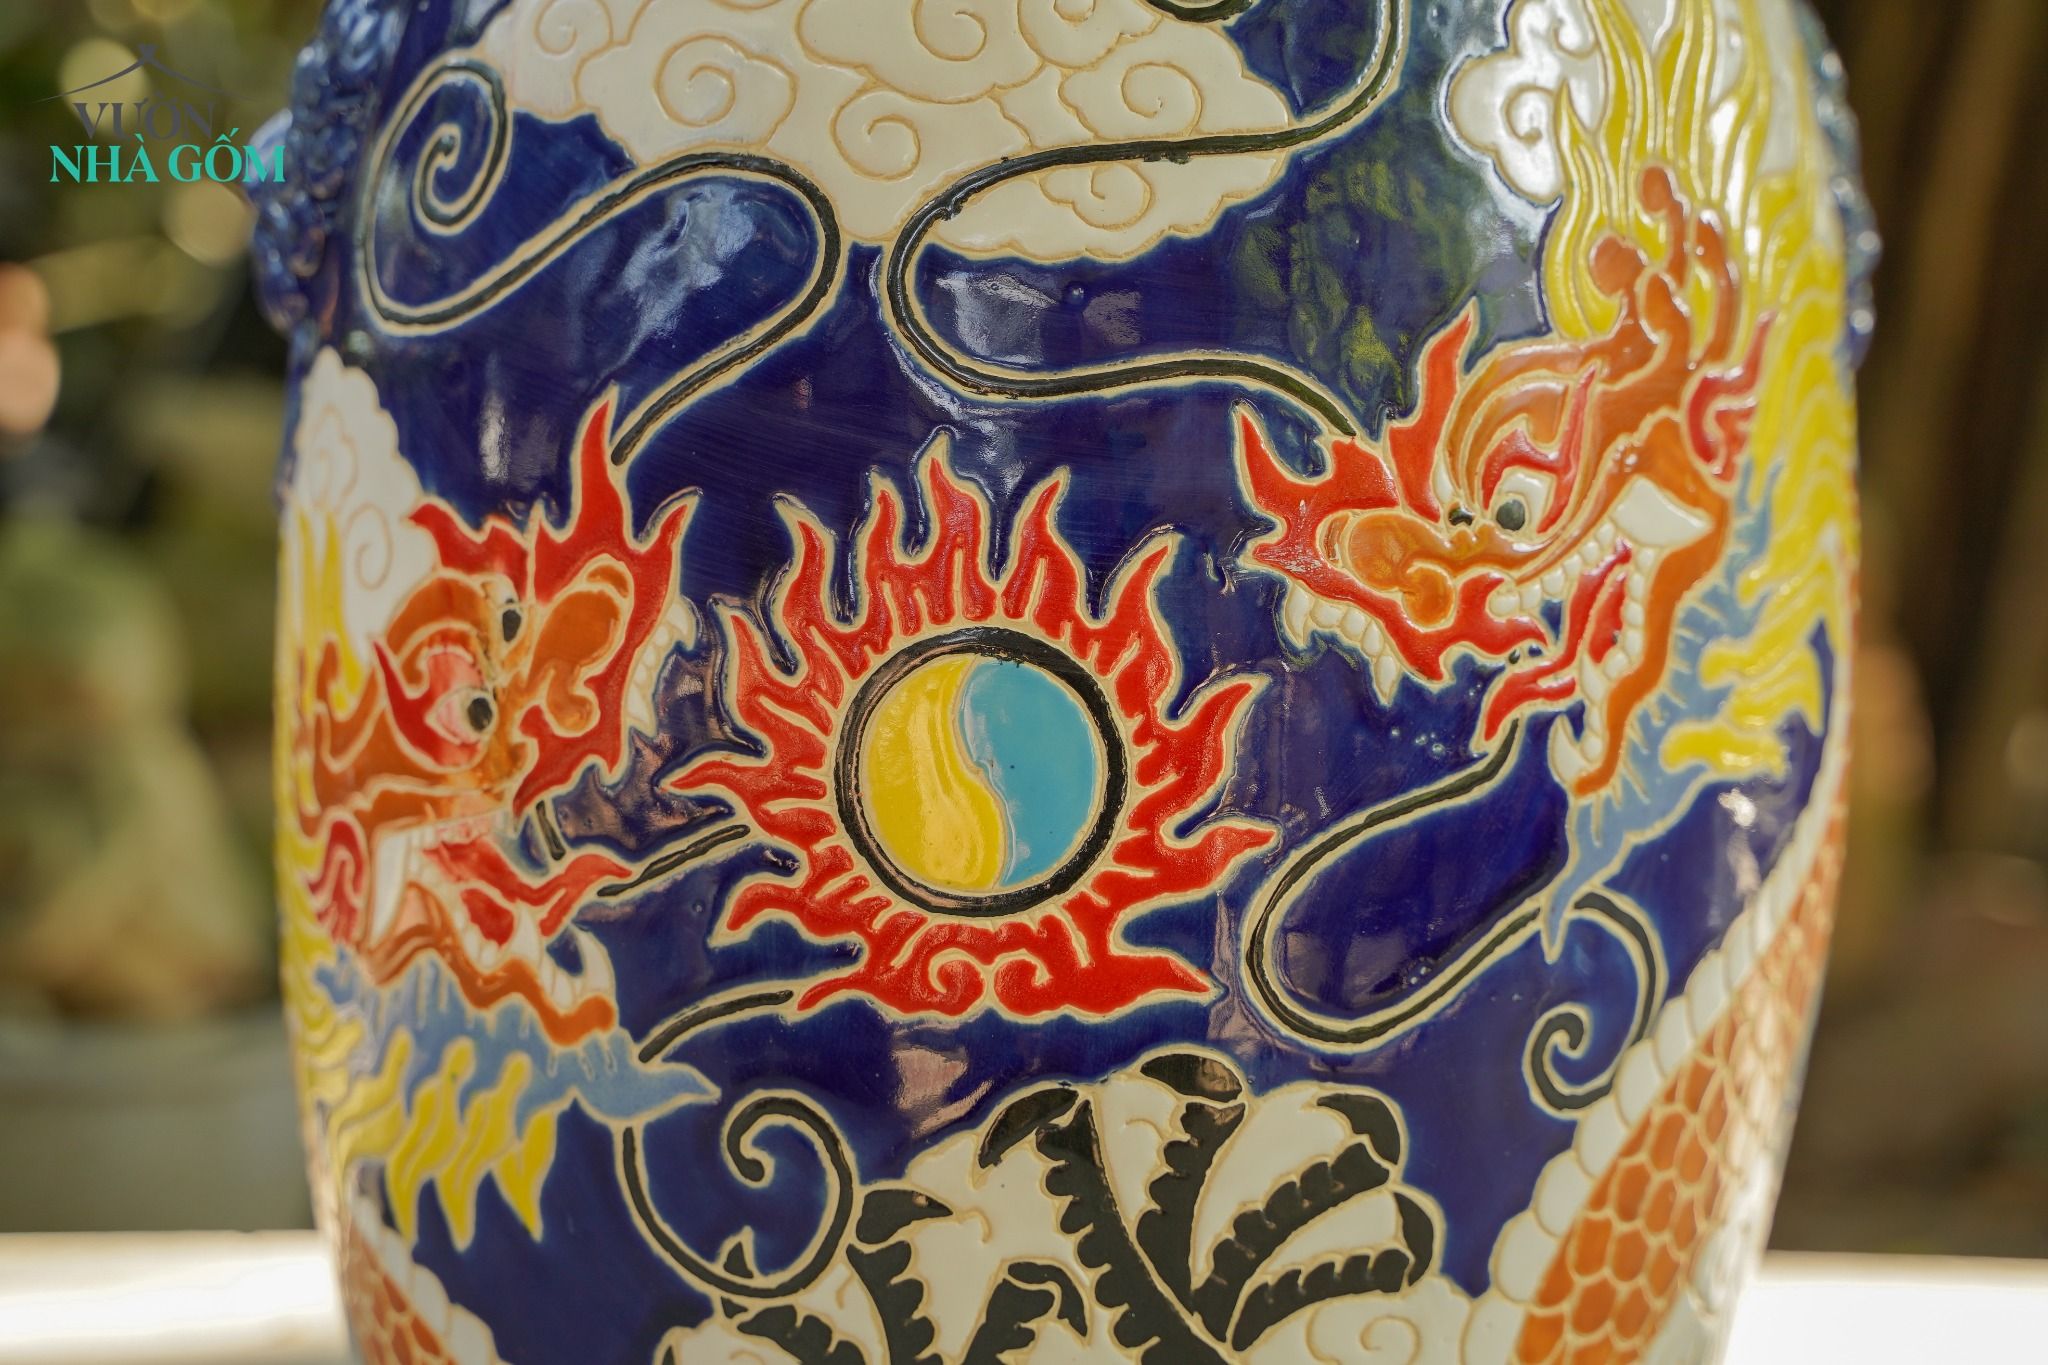  Đôn trống Song Long Tranh Châu tay cầm hình khối, màu xanh cobalt, gốm mỹ nghệ Nam Bộ, C45 x R35cm 